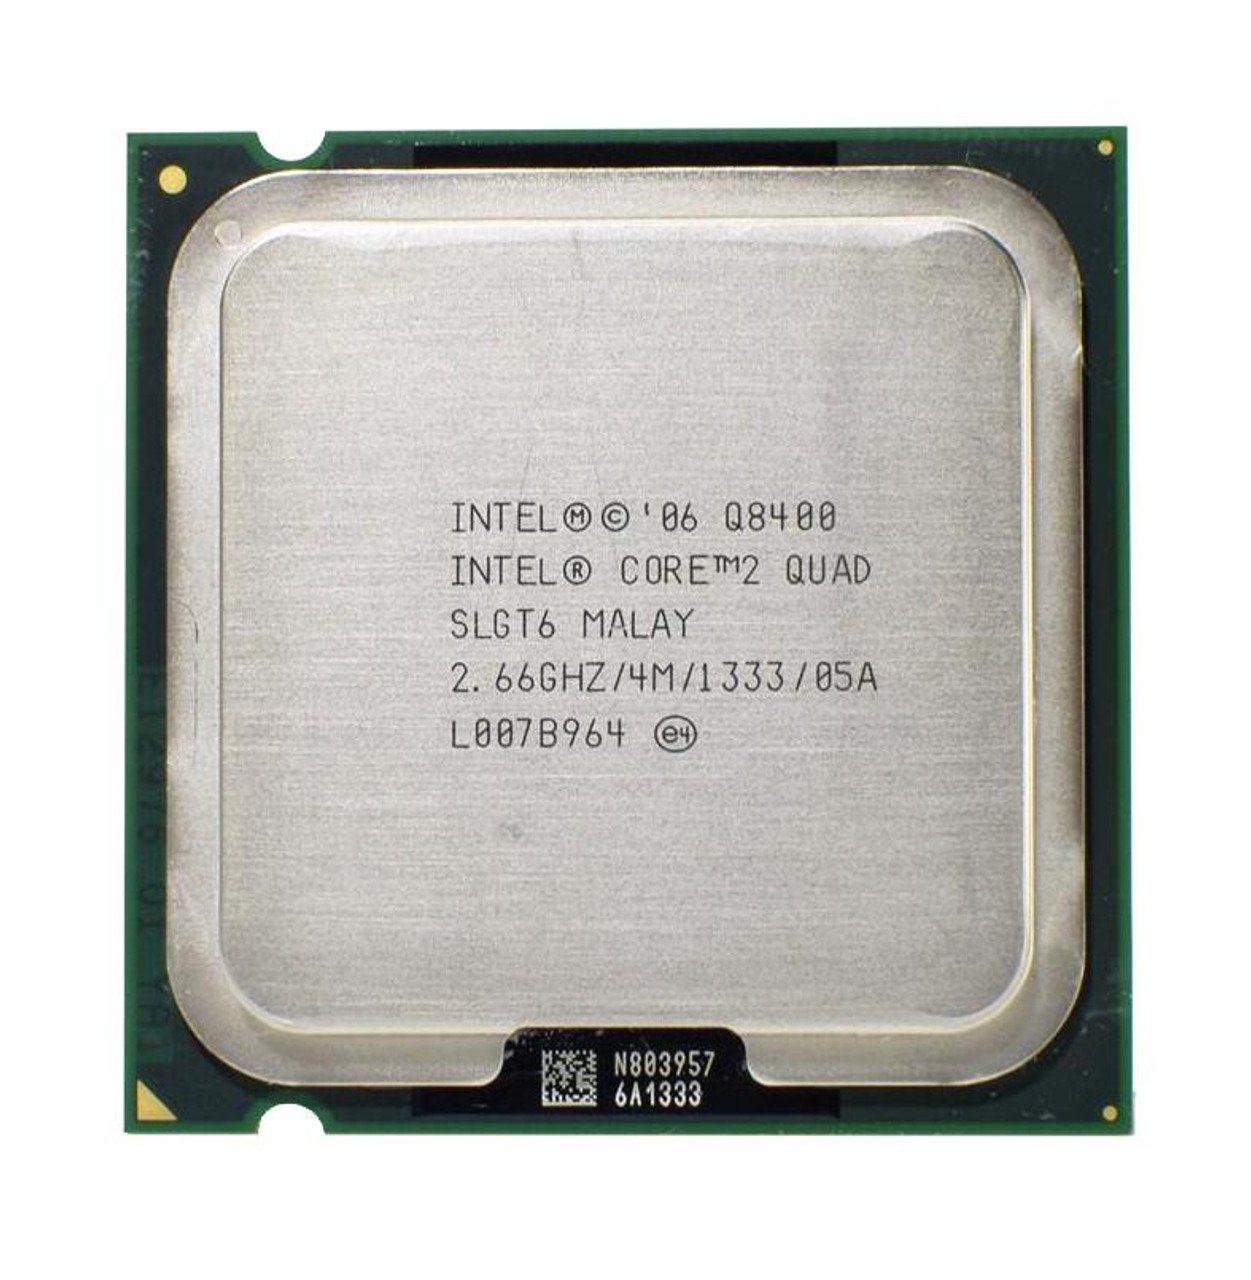 Dell 2.66GHz 1333MHz FSB 4MB L2 Cache Intel Core 2 Quad Q8400 Processor Upgrade